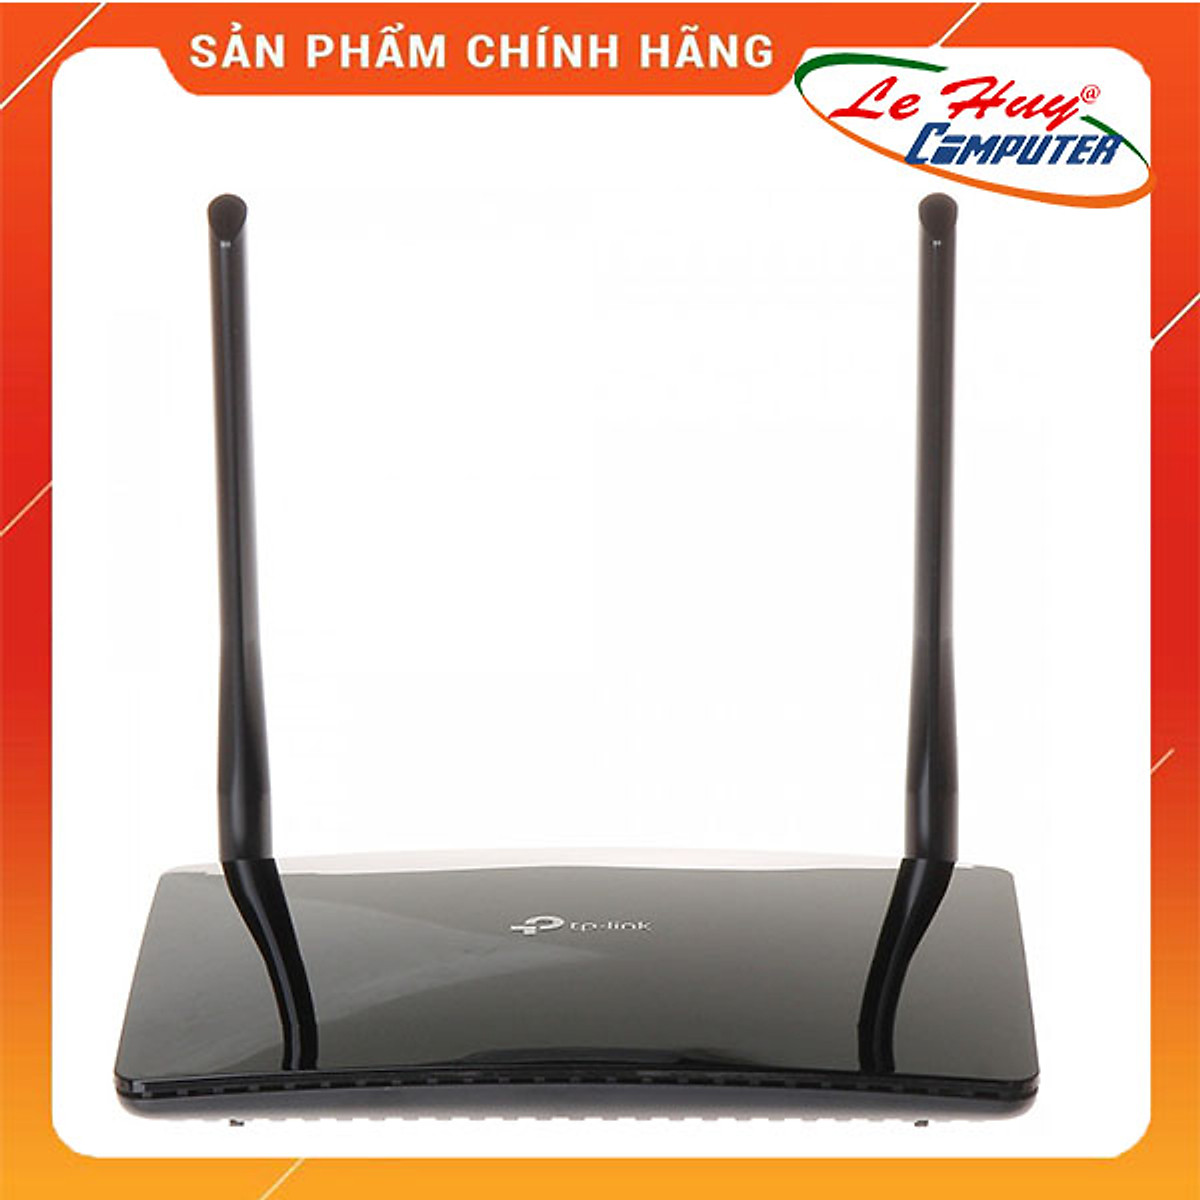 Bộ Phát Wifi 4G LTE TP-Link TL-MR6400 Chuẩn N 300Mbps - Hàng Chính Hãng